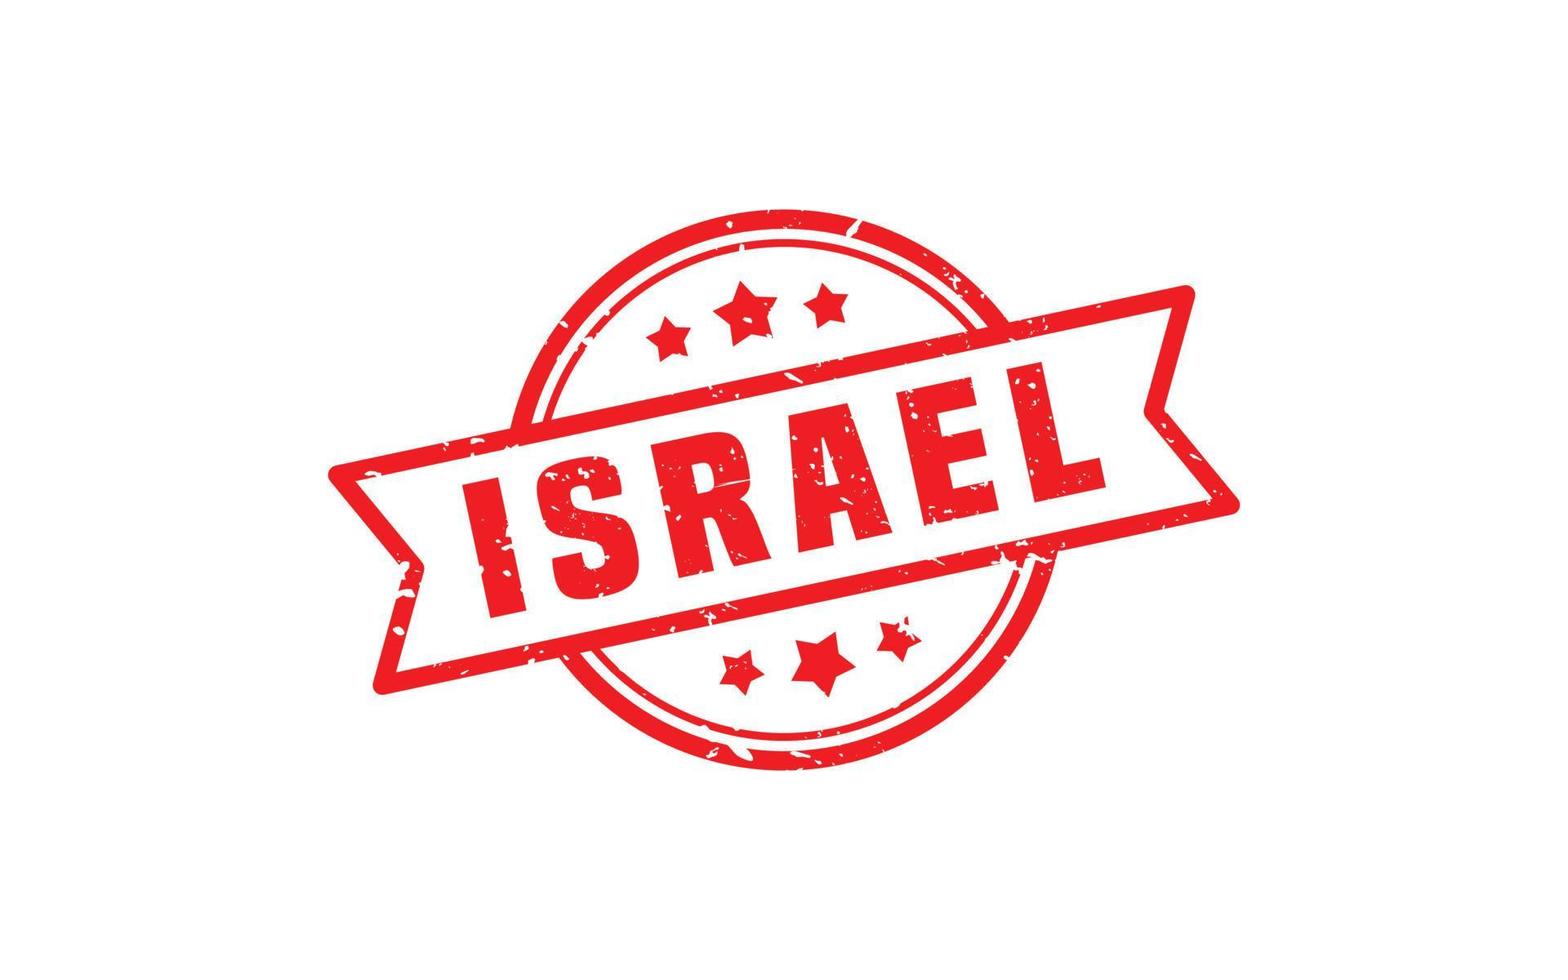 borracha de carimbo de israel com estilo grunge em fundo branco vetor